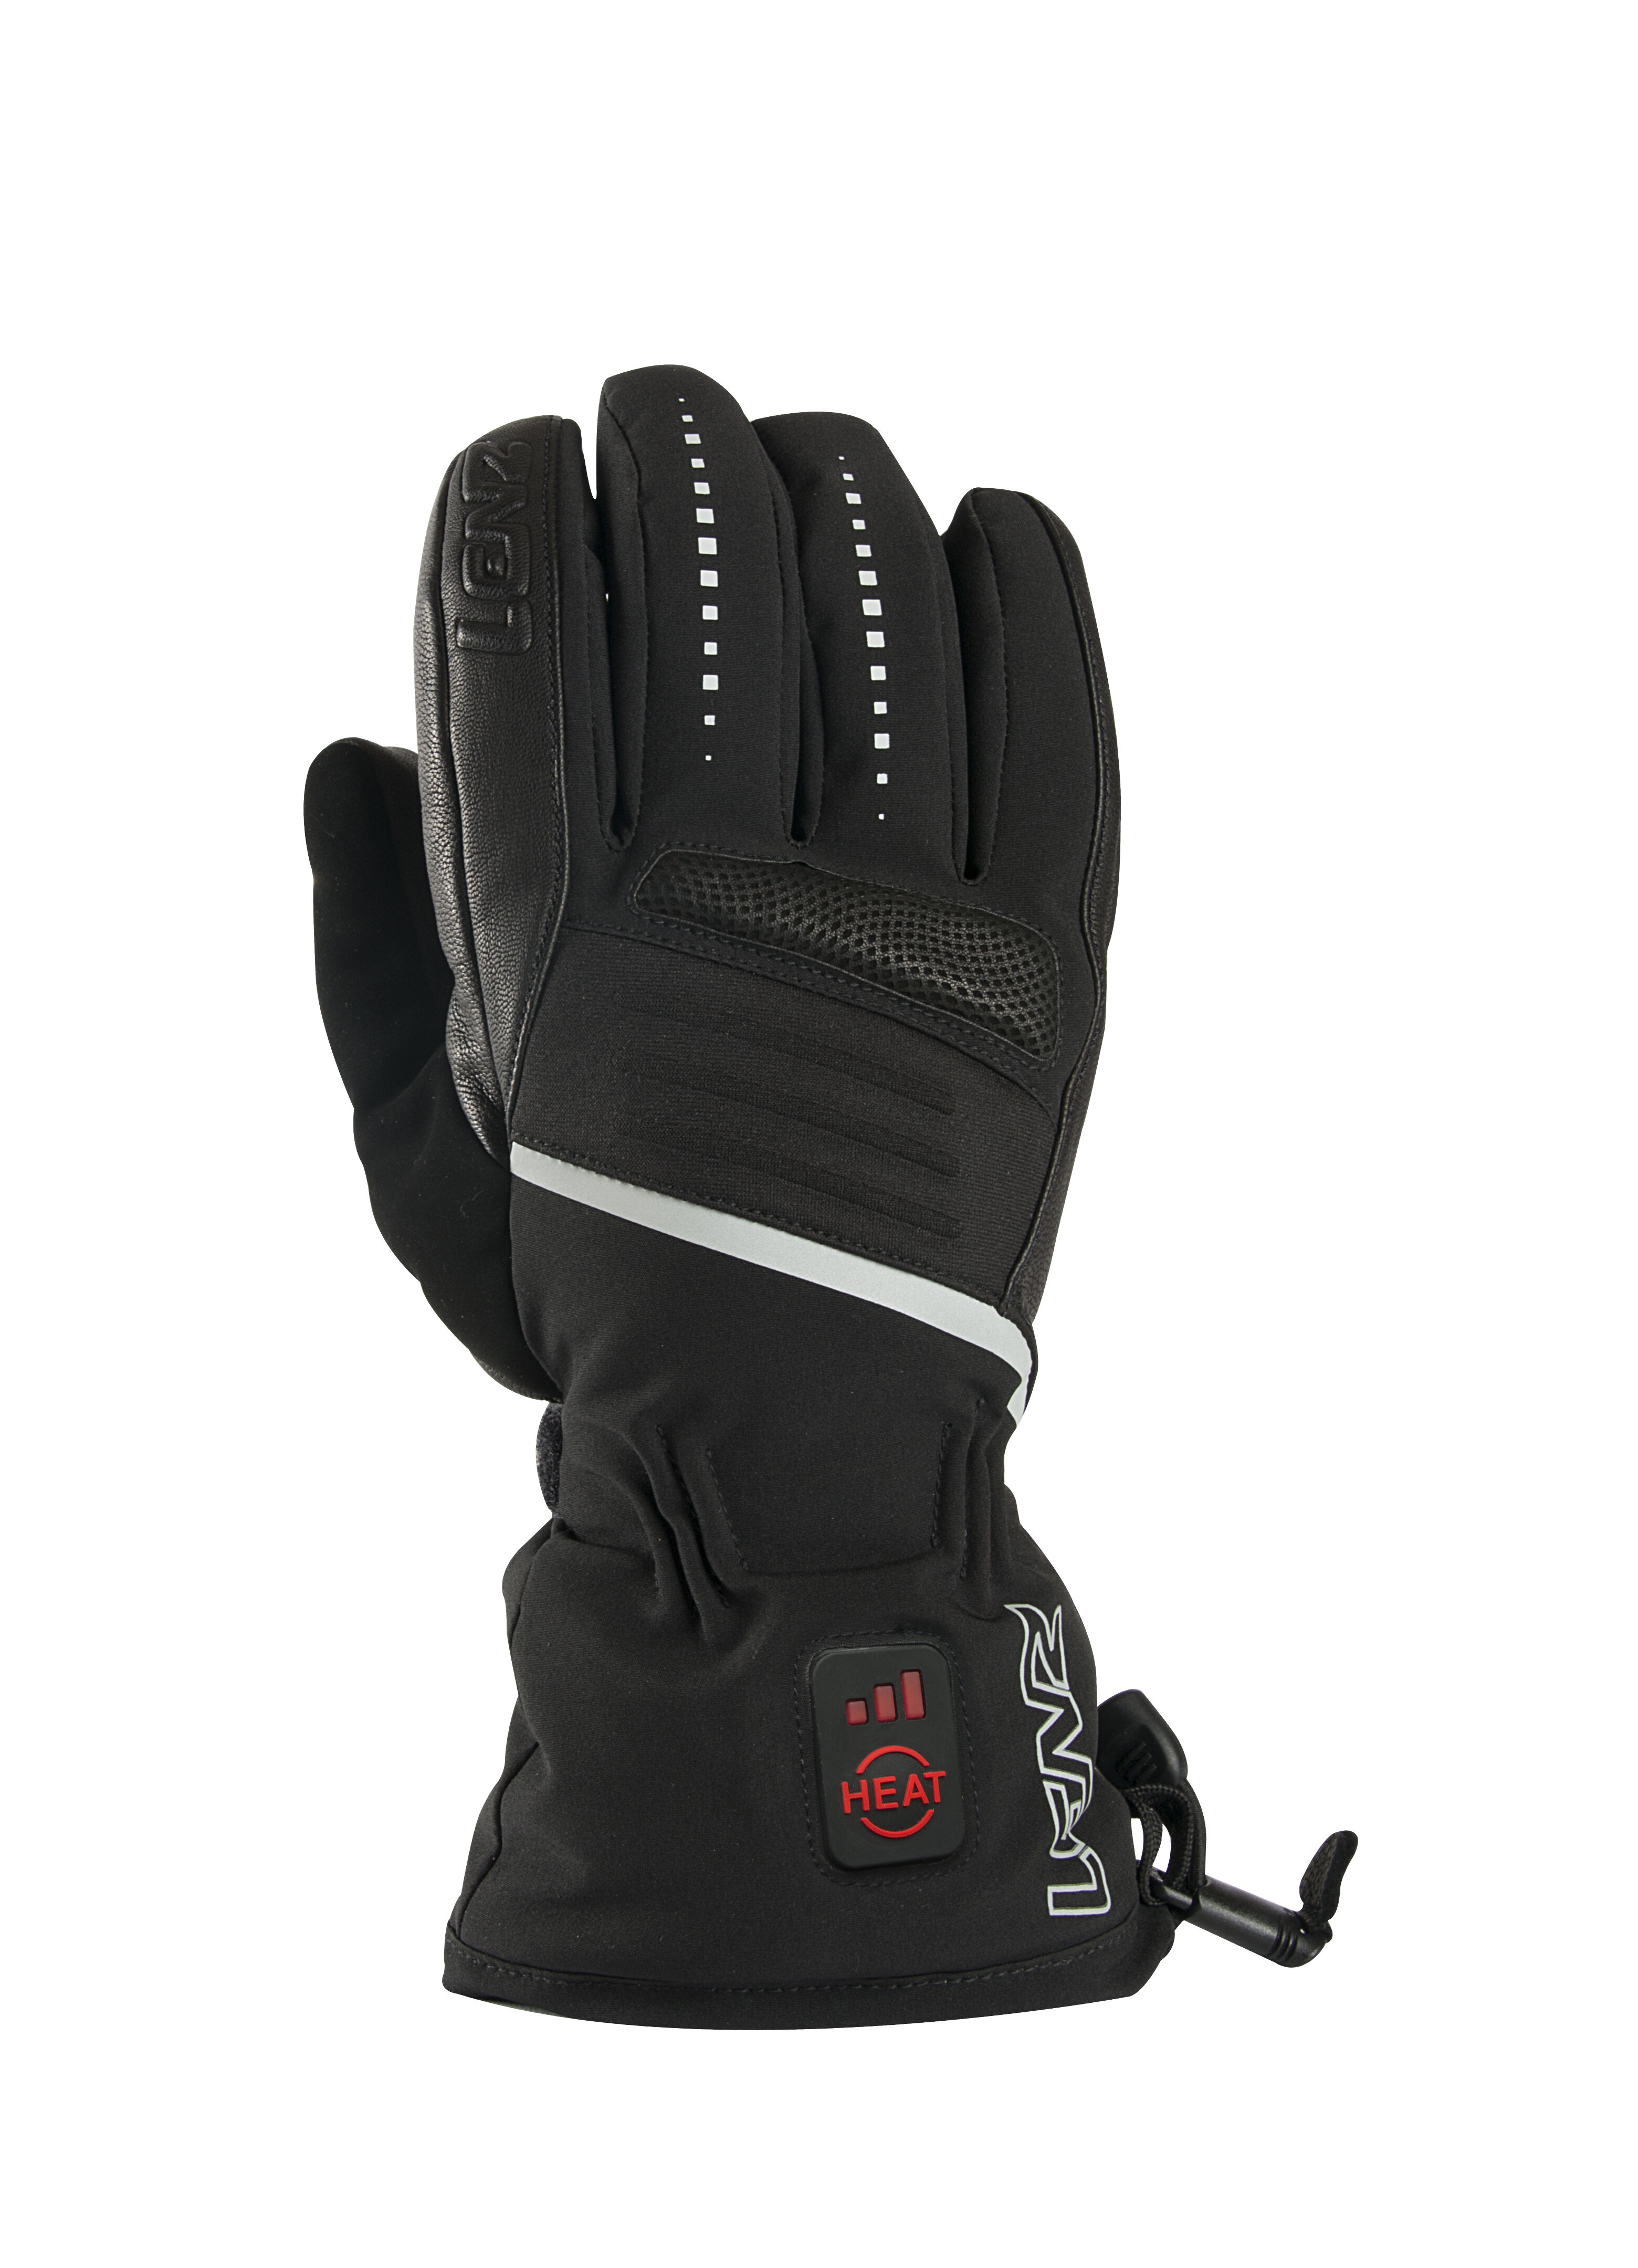 Lenz 1250 Heat Glove 3.0 men